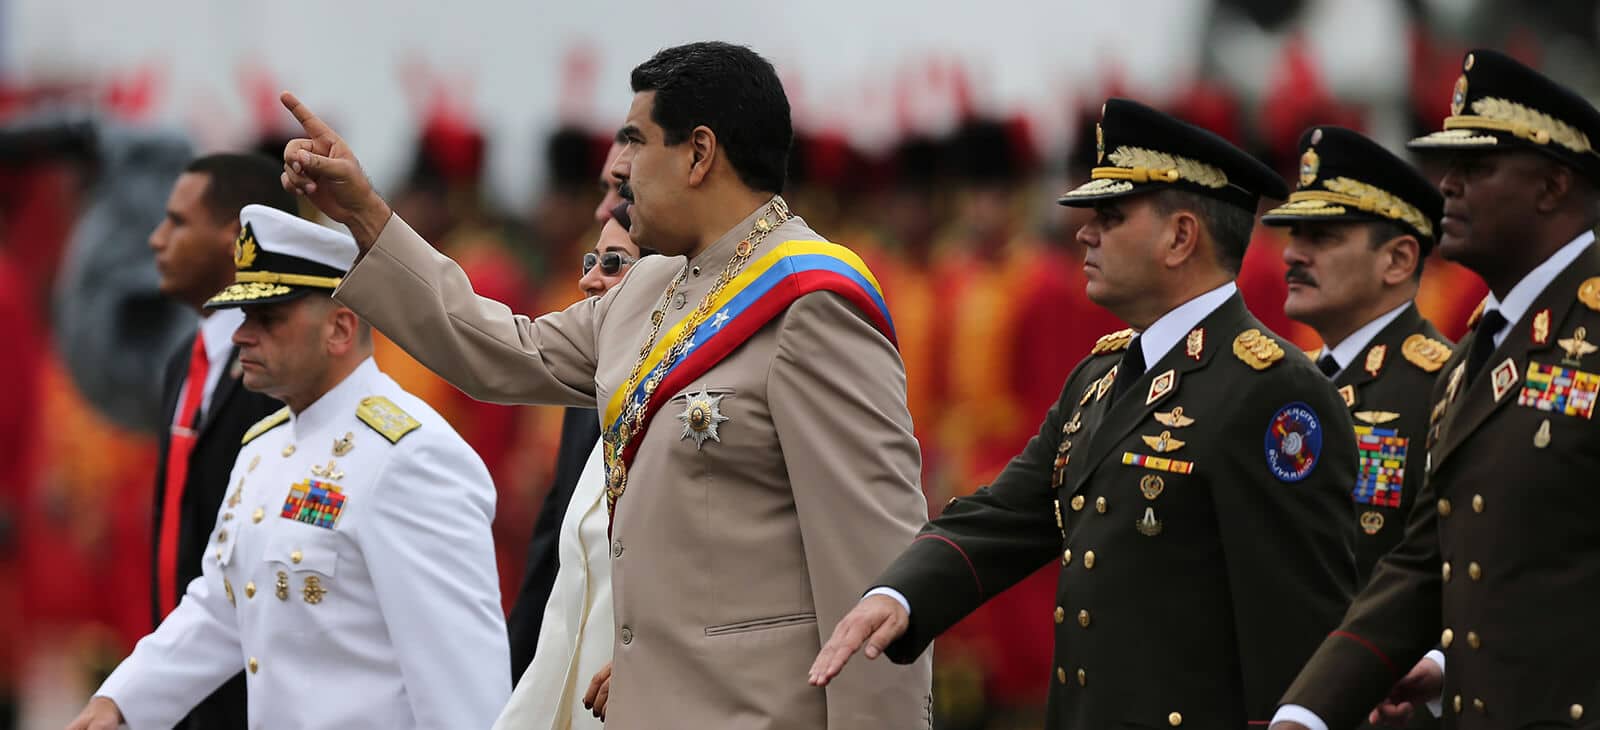 10Sep - Tirania de Nicolas Maduro - Página 30 2-President-Nicolas-Maduro-walks-with-the-Army-commanders-baton-in-hand-Army-Day-Caracas-24-06-2017-Credit-Fernando-Llano-Venezuela-estado-mafia-Cartel-de-los-soles-AP_-17175685679097-copy